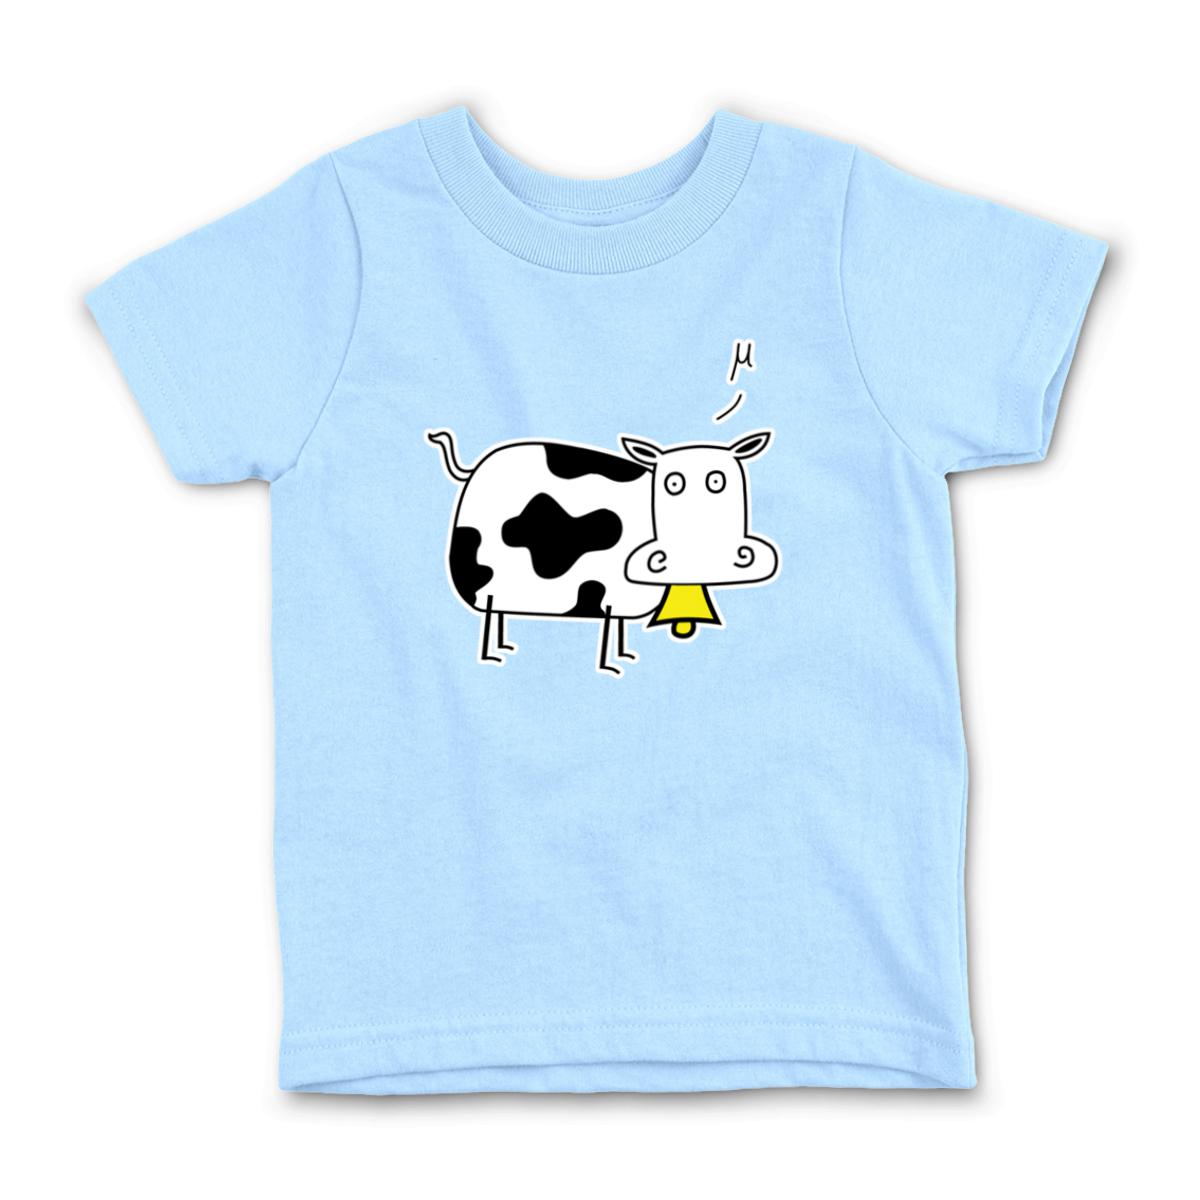 Mu Cow Kid's Tee Medium light-blue